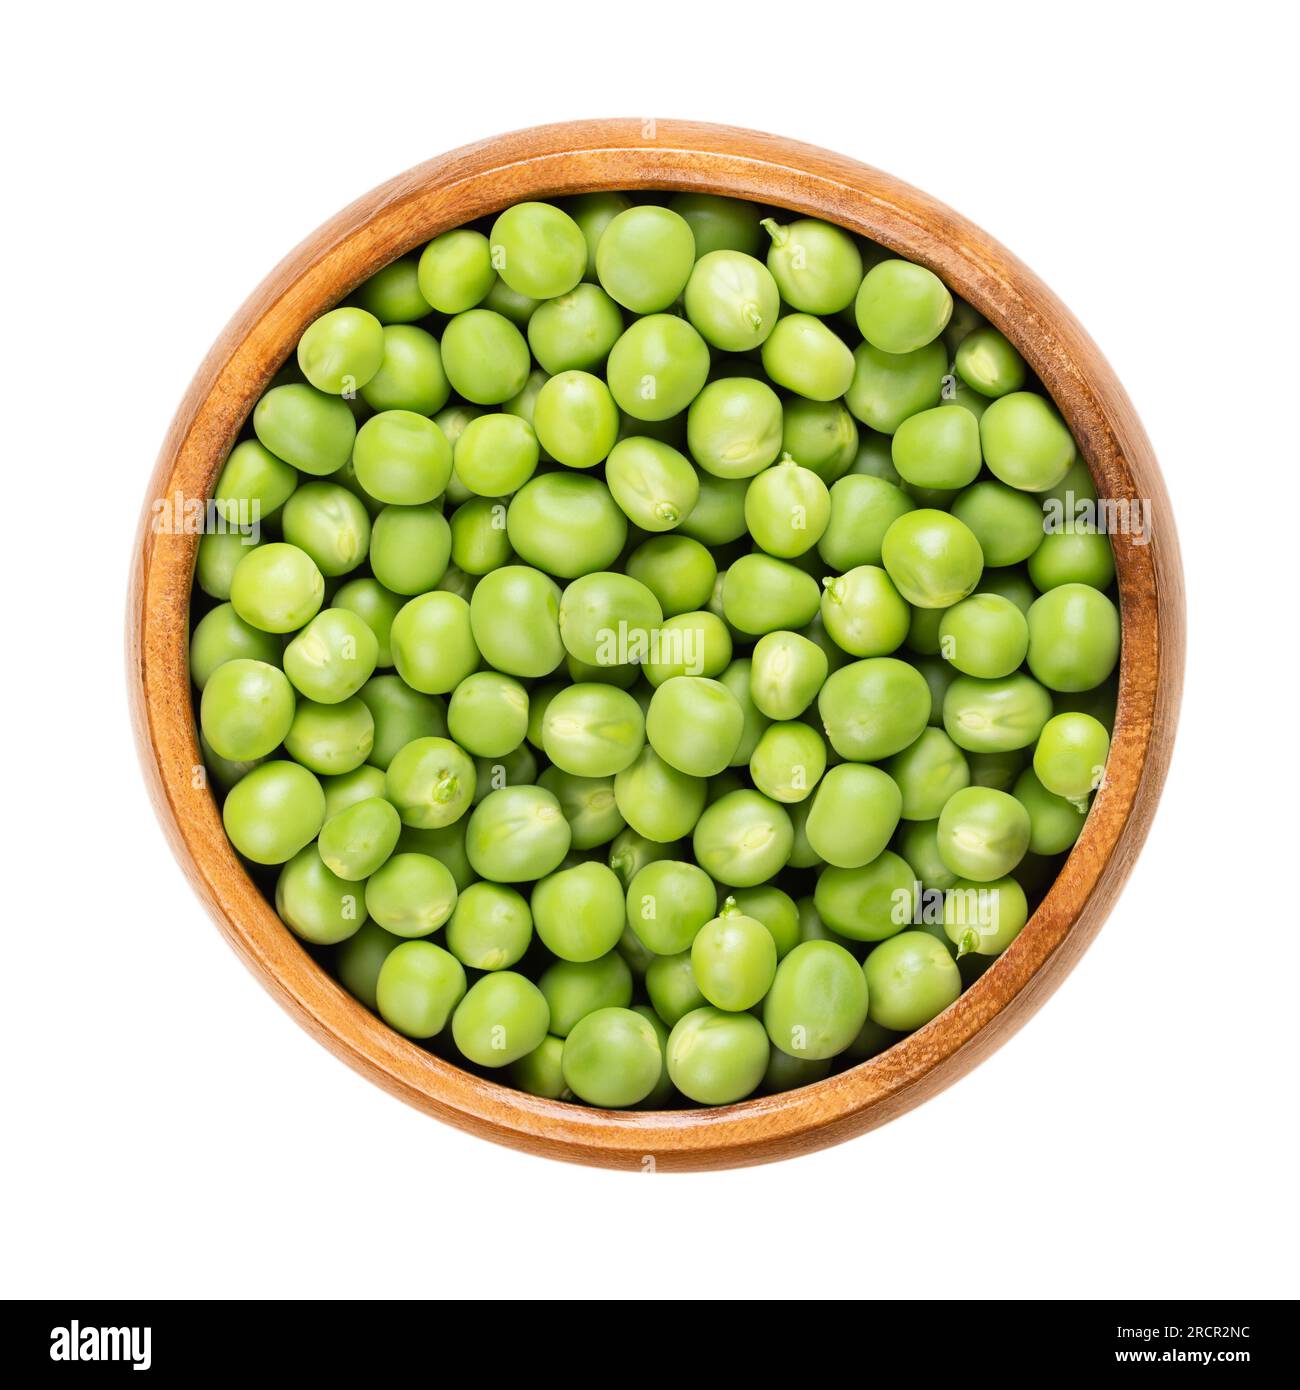 Piselli verdi freschi, in una ciotola di legno. Semi sferici crudi di frutta a guscio Pisum sativum di colore verdastro e giallastro, utilizzati principalmente per le zuppe. Foto Stock